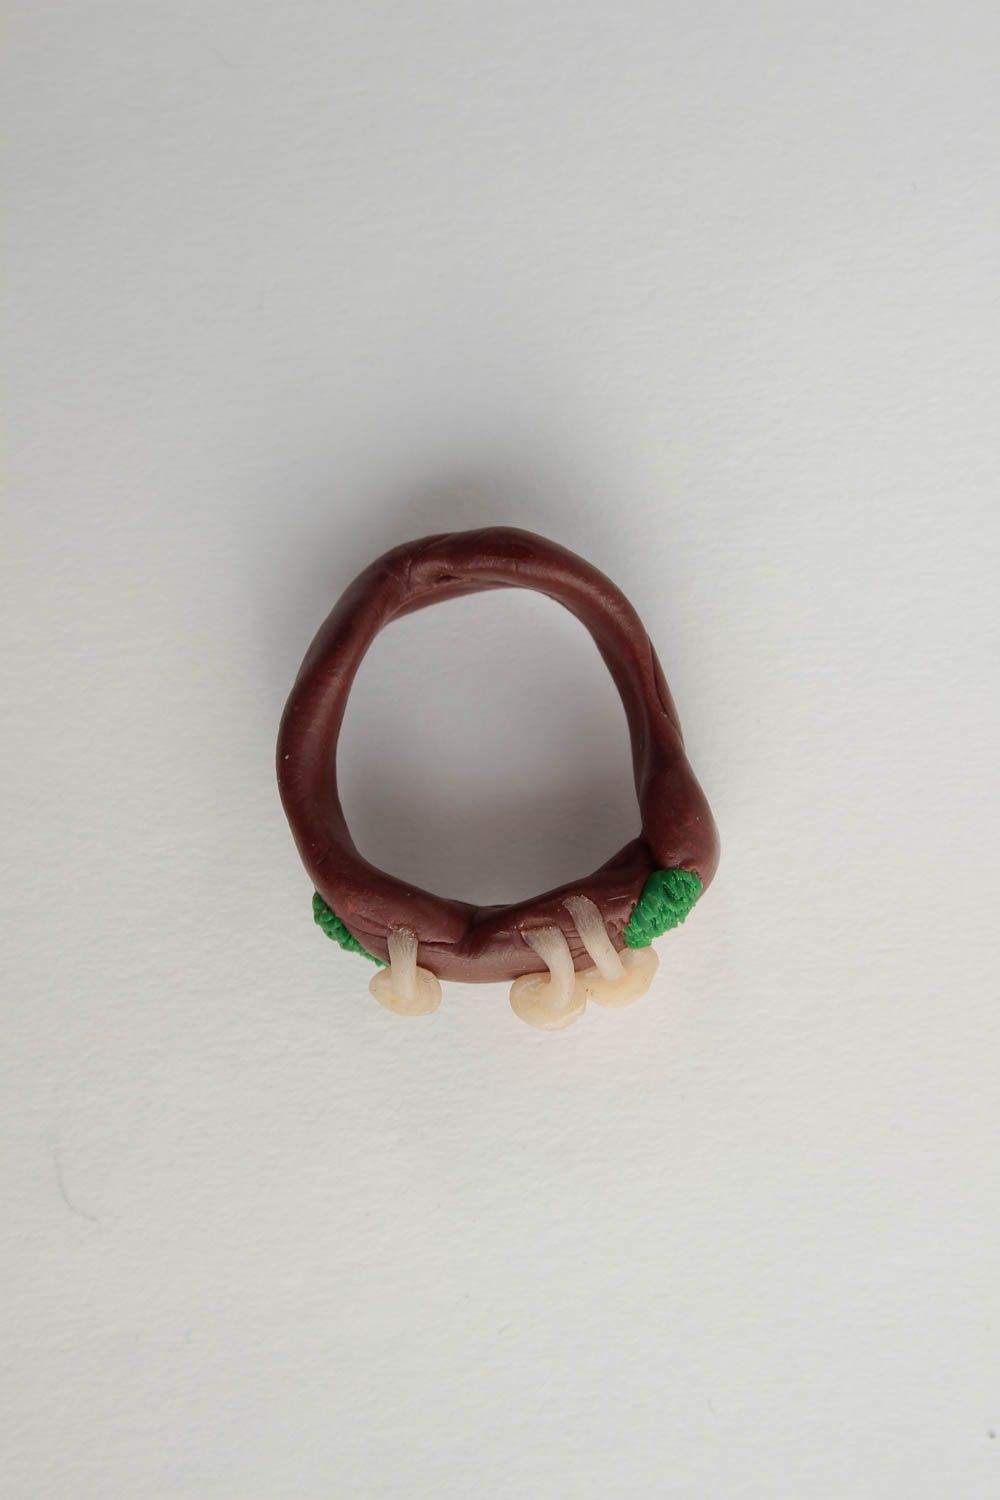 Brauner Frauen Ring handmade Polymer Schmuck Accessoire für Frauen Pilze  foto 5